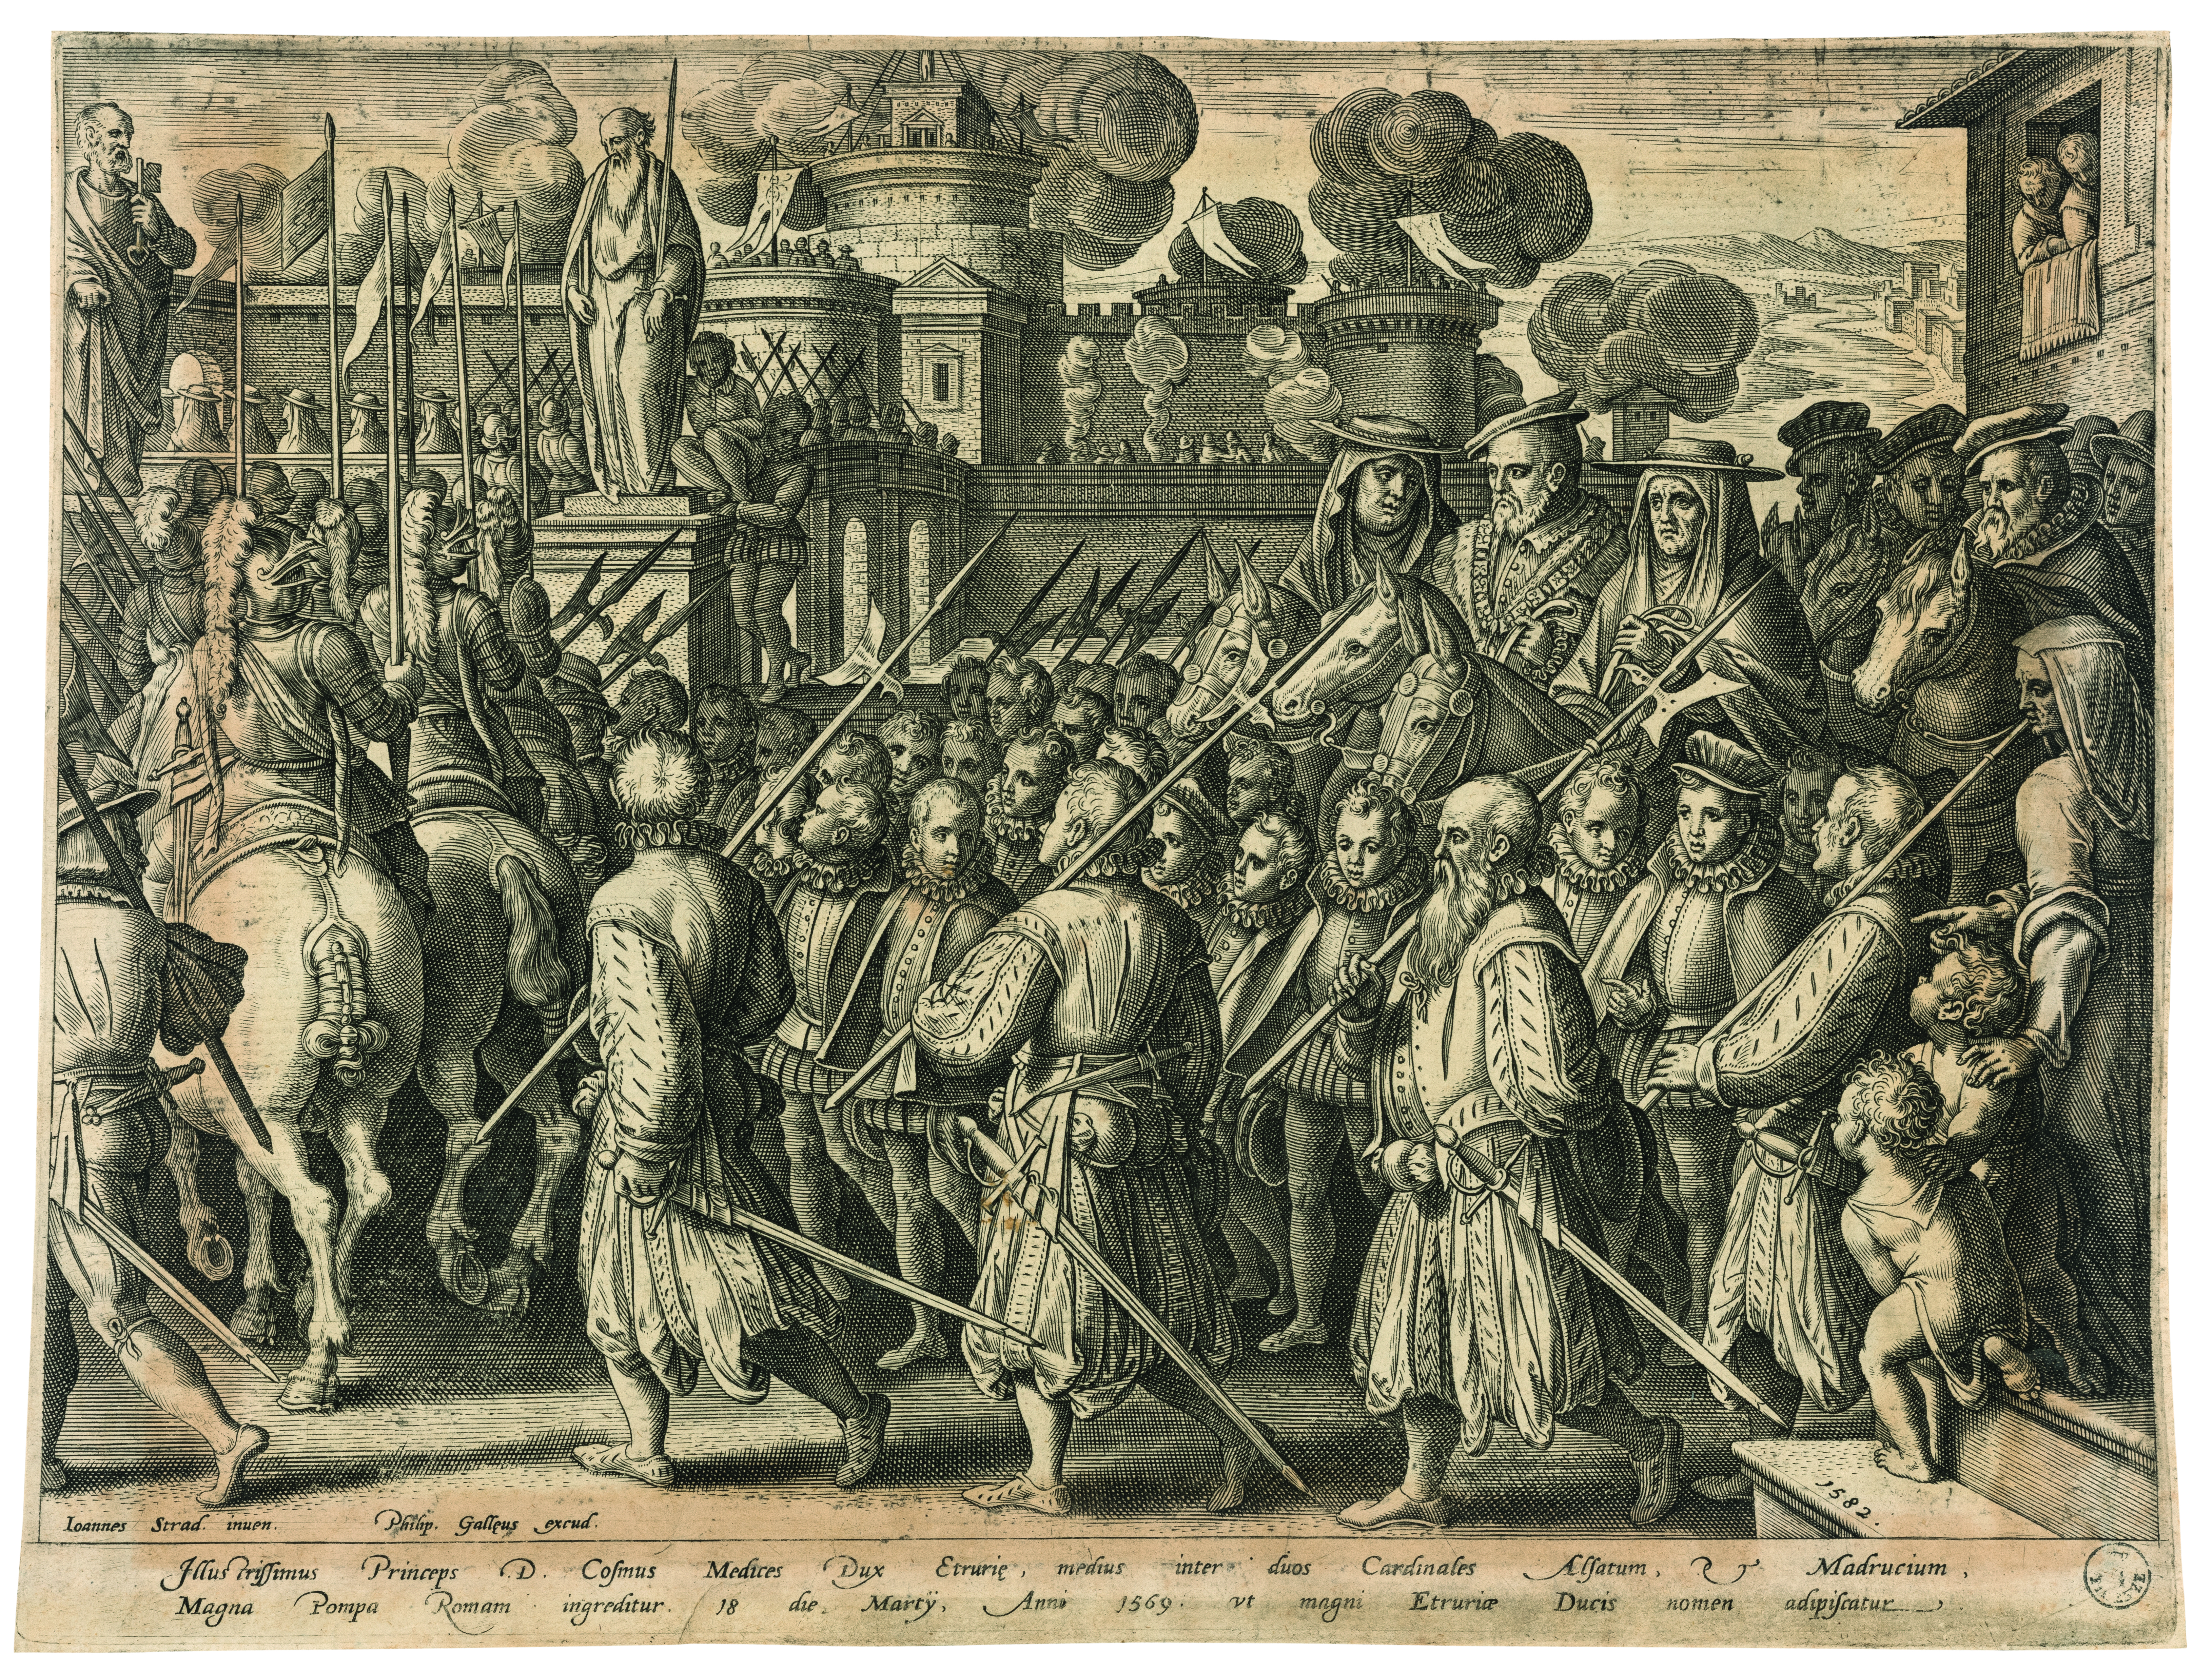 Cosimo I de' Medici's army of Lancers  at the Uffizi